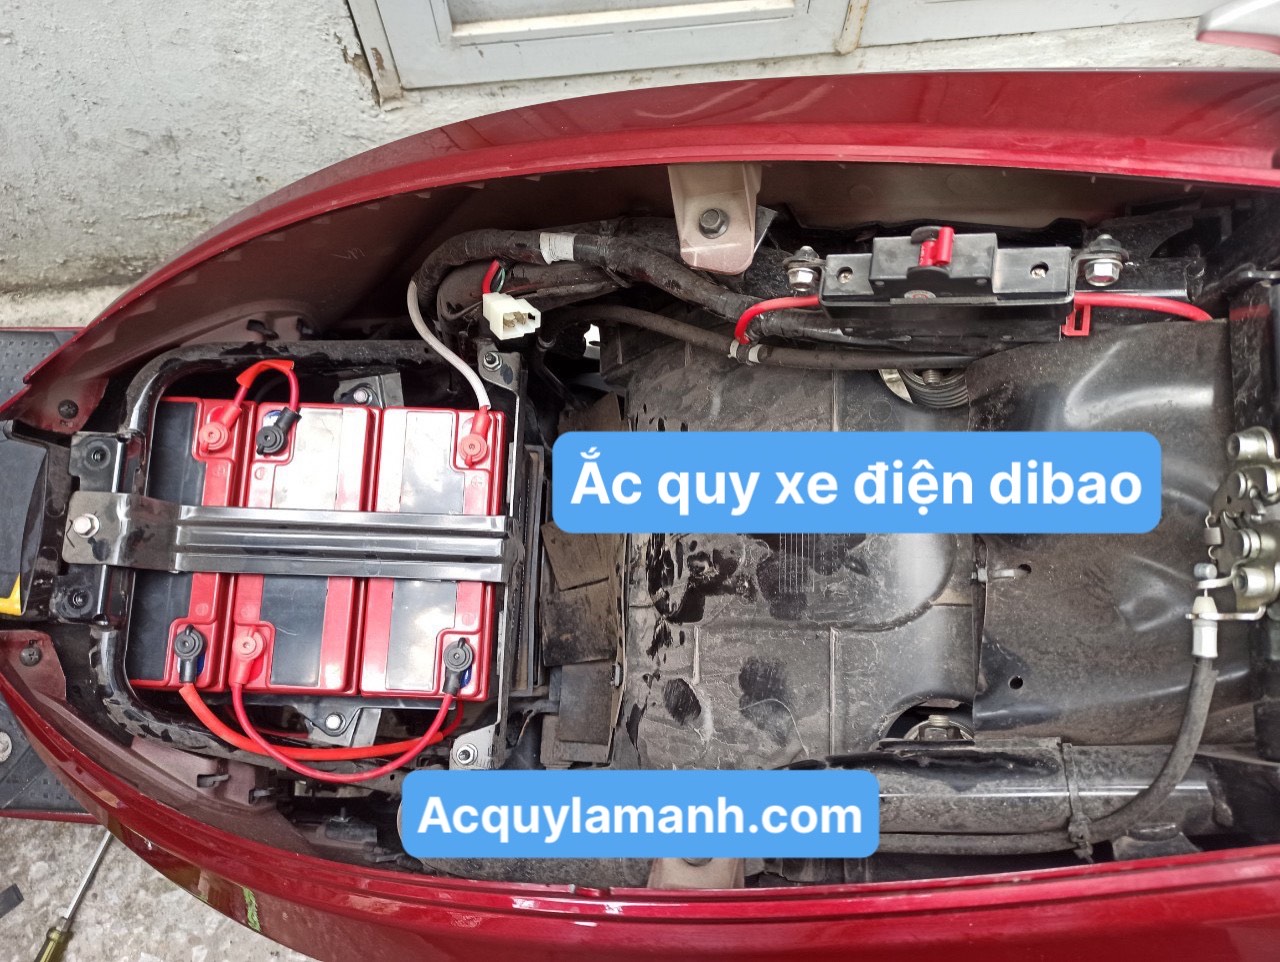 Thay bình ắc quy xe máy điện Dibao tại Hải Phòng